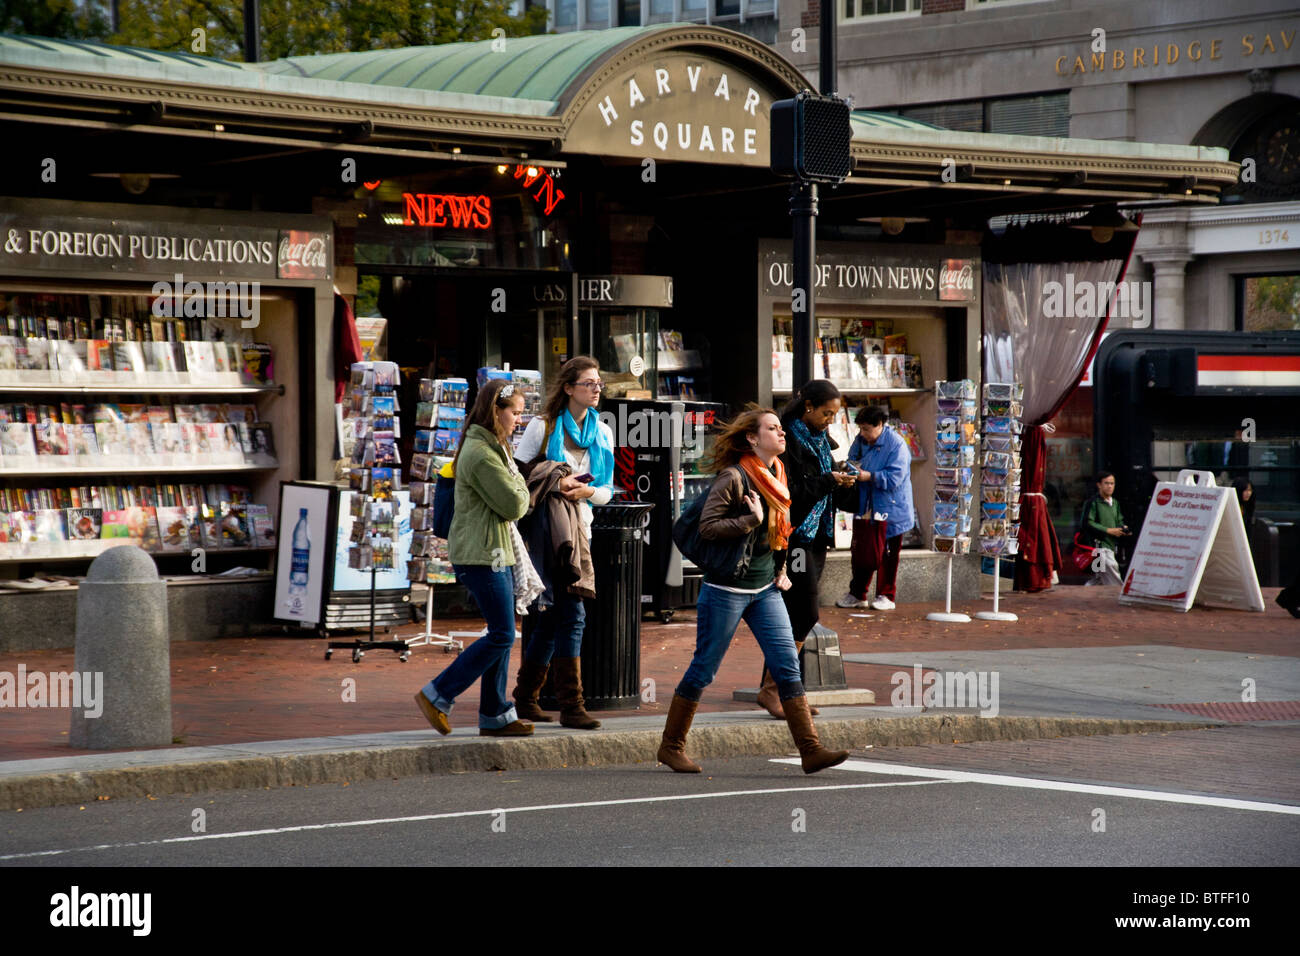 Gli studenti cross Massachusetts Avenue in Harvard Square, Cambridge, MA. Sullo sfondo è la notizia di stand e la stazione della metropolitana. Foto Stock